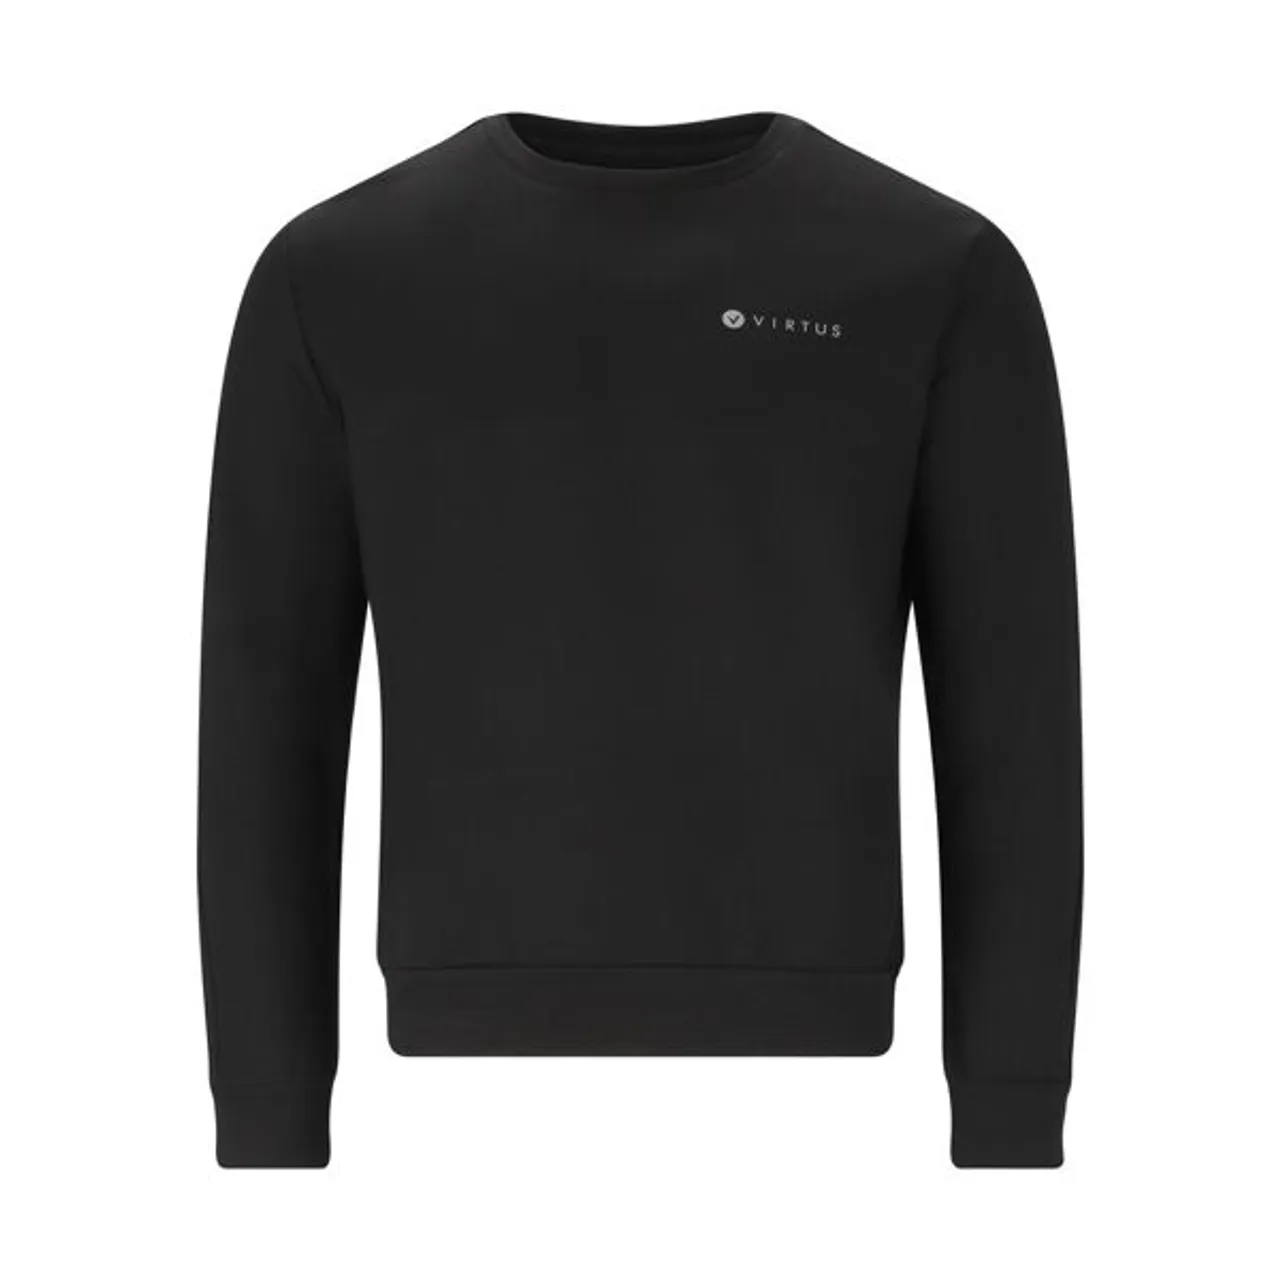 Sweatshirt VIRTUS "Brent" Gr. L, schwarz Herren Sweatshirts aus angenehm weichem Materialmix